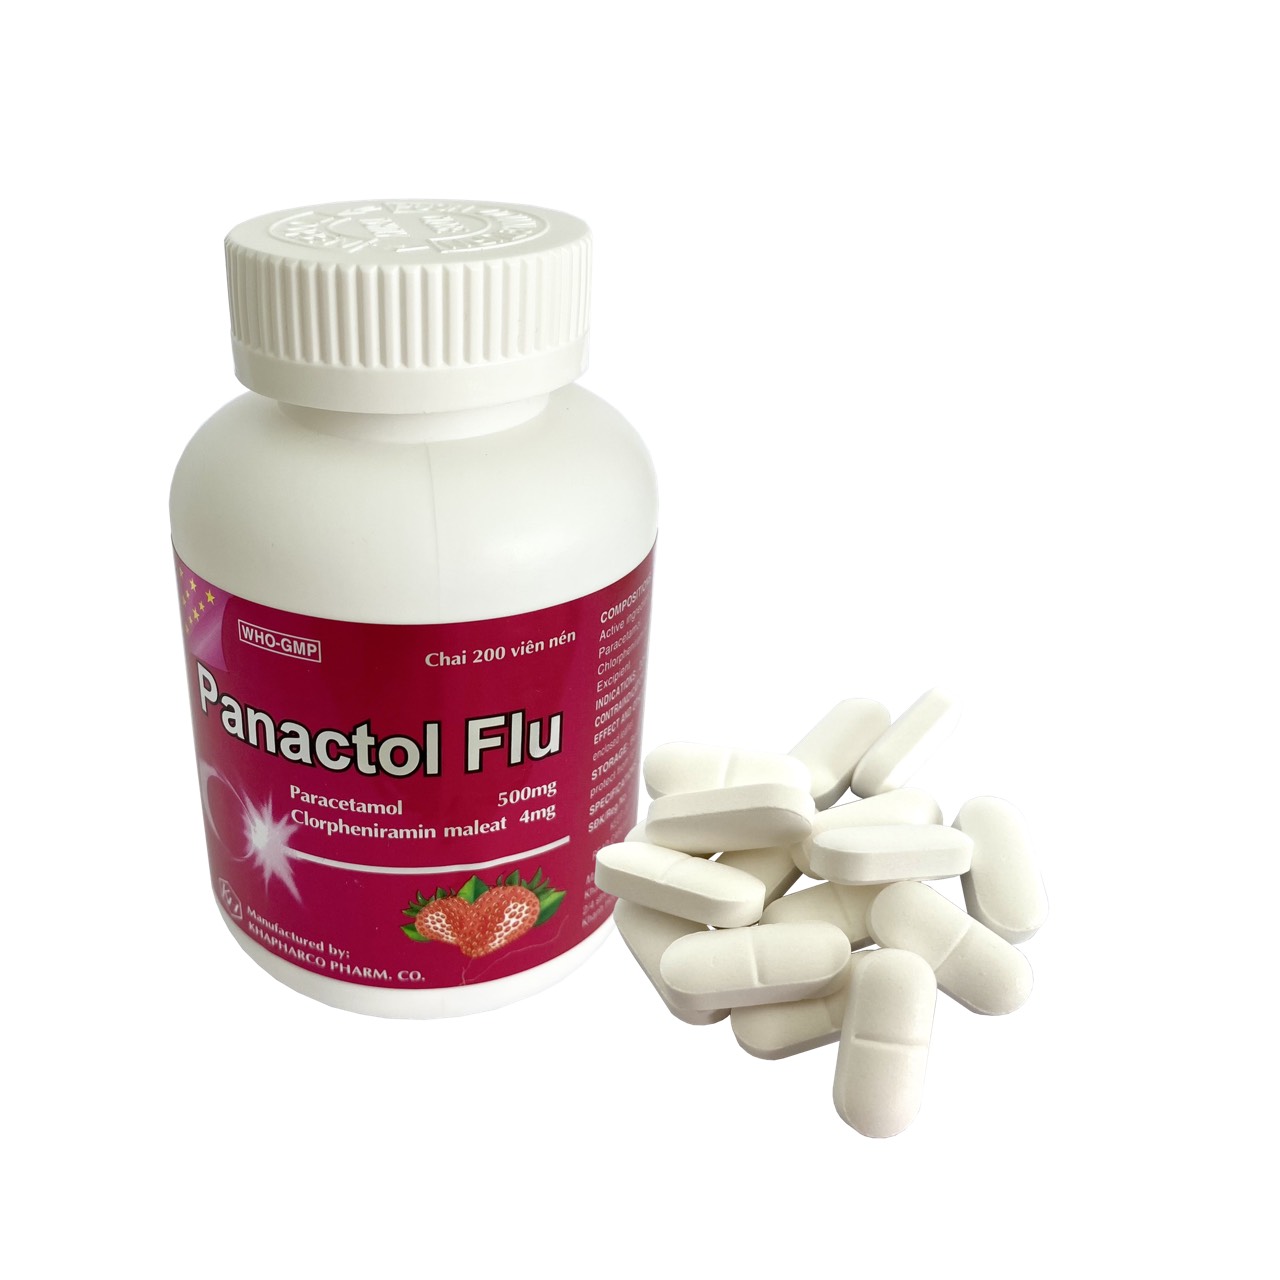 Panactol Flu Paracetamol 500mg Khapharco (C/200 viên nén, mùi dâu ngọt)